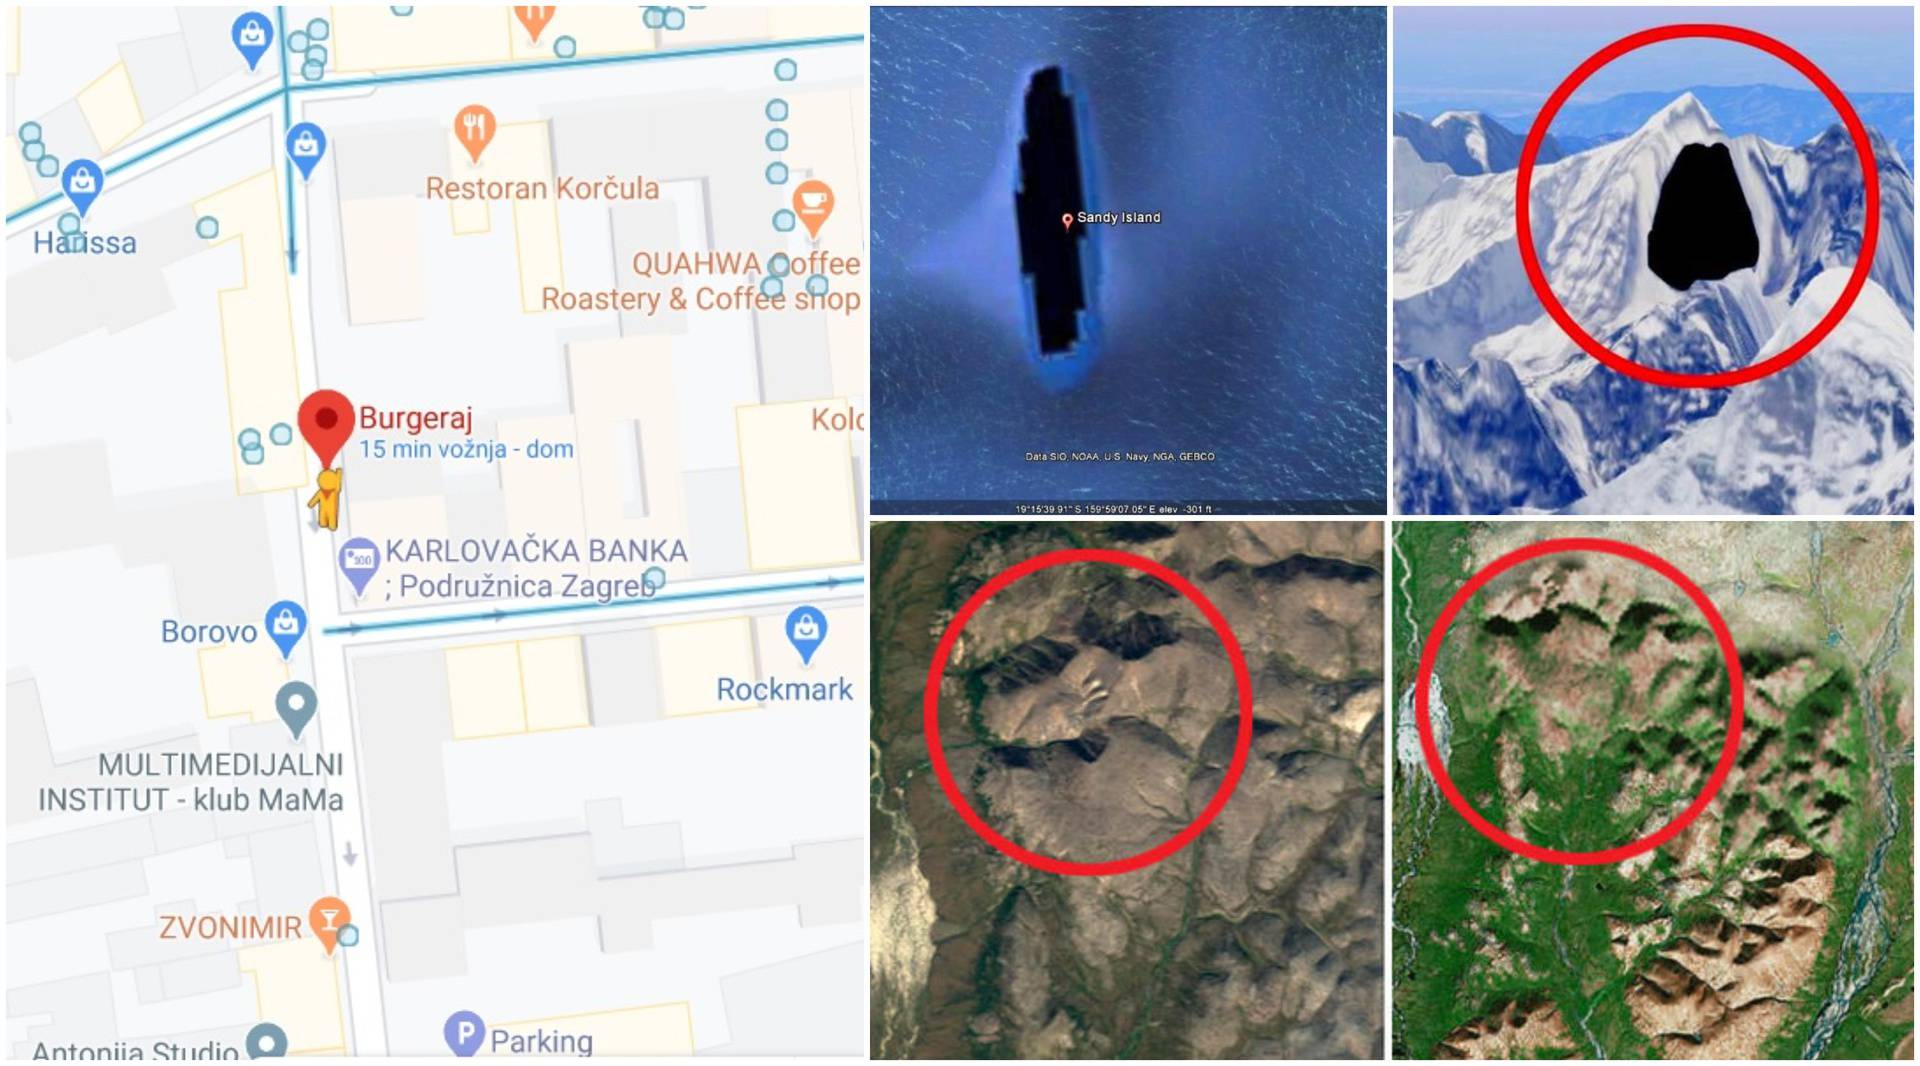 Tajne lokacije koje je Google Maps sakrio: 'Zašto se ne vidi dio Preradovićeve ulice?'